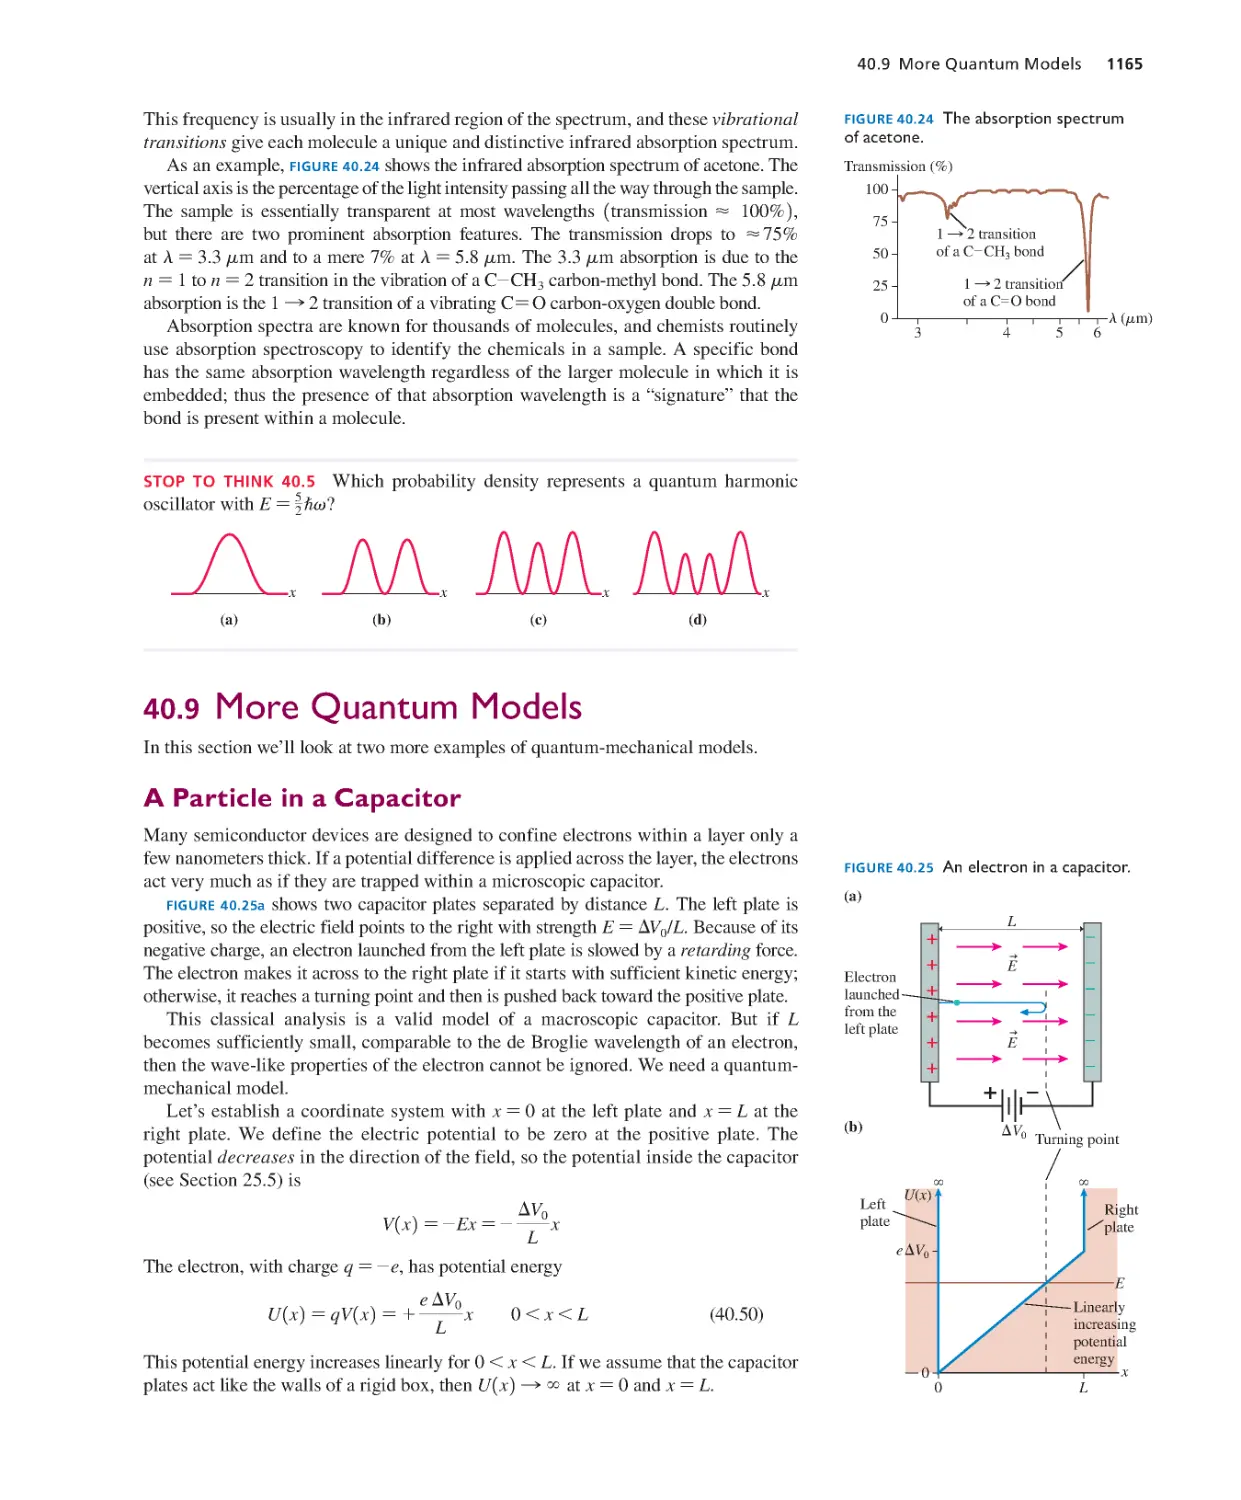 40.9. More Quantum Models